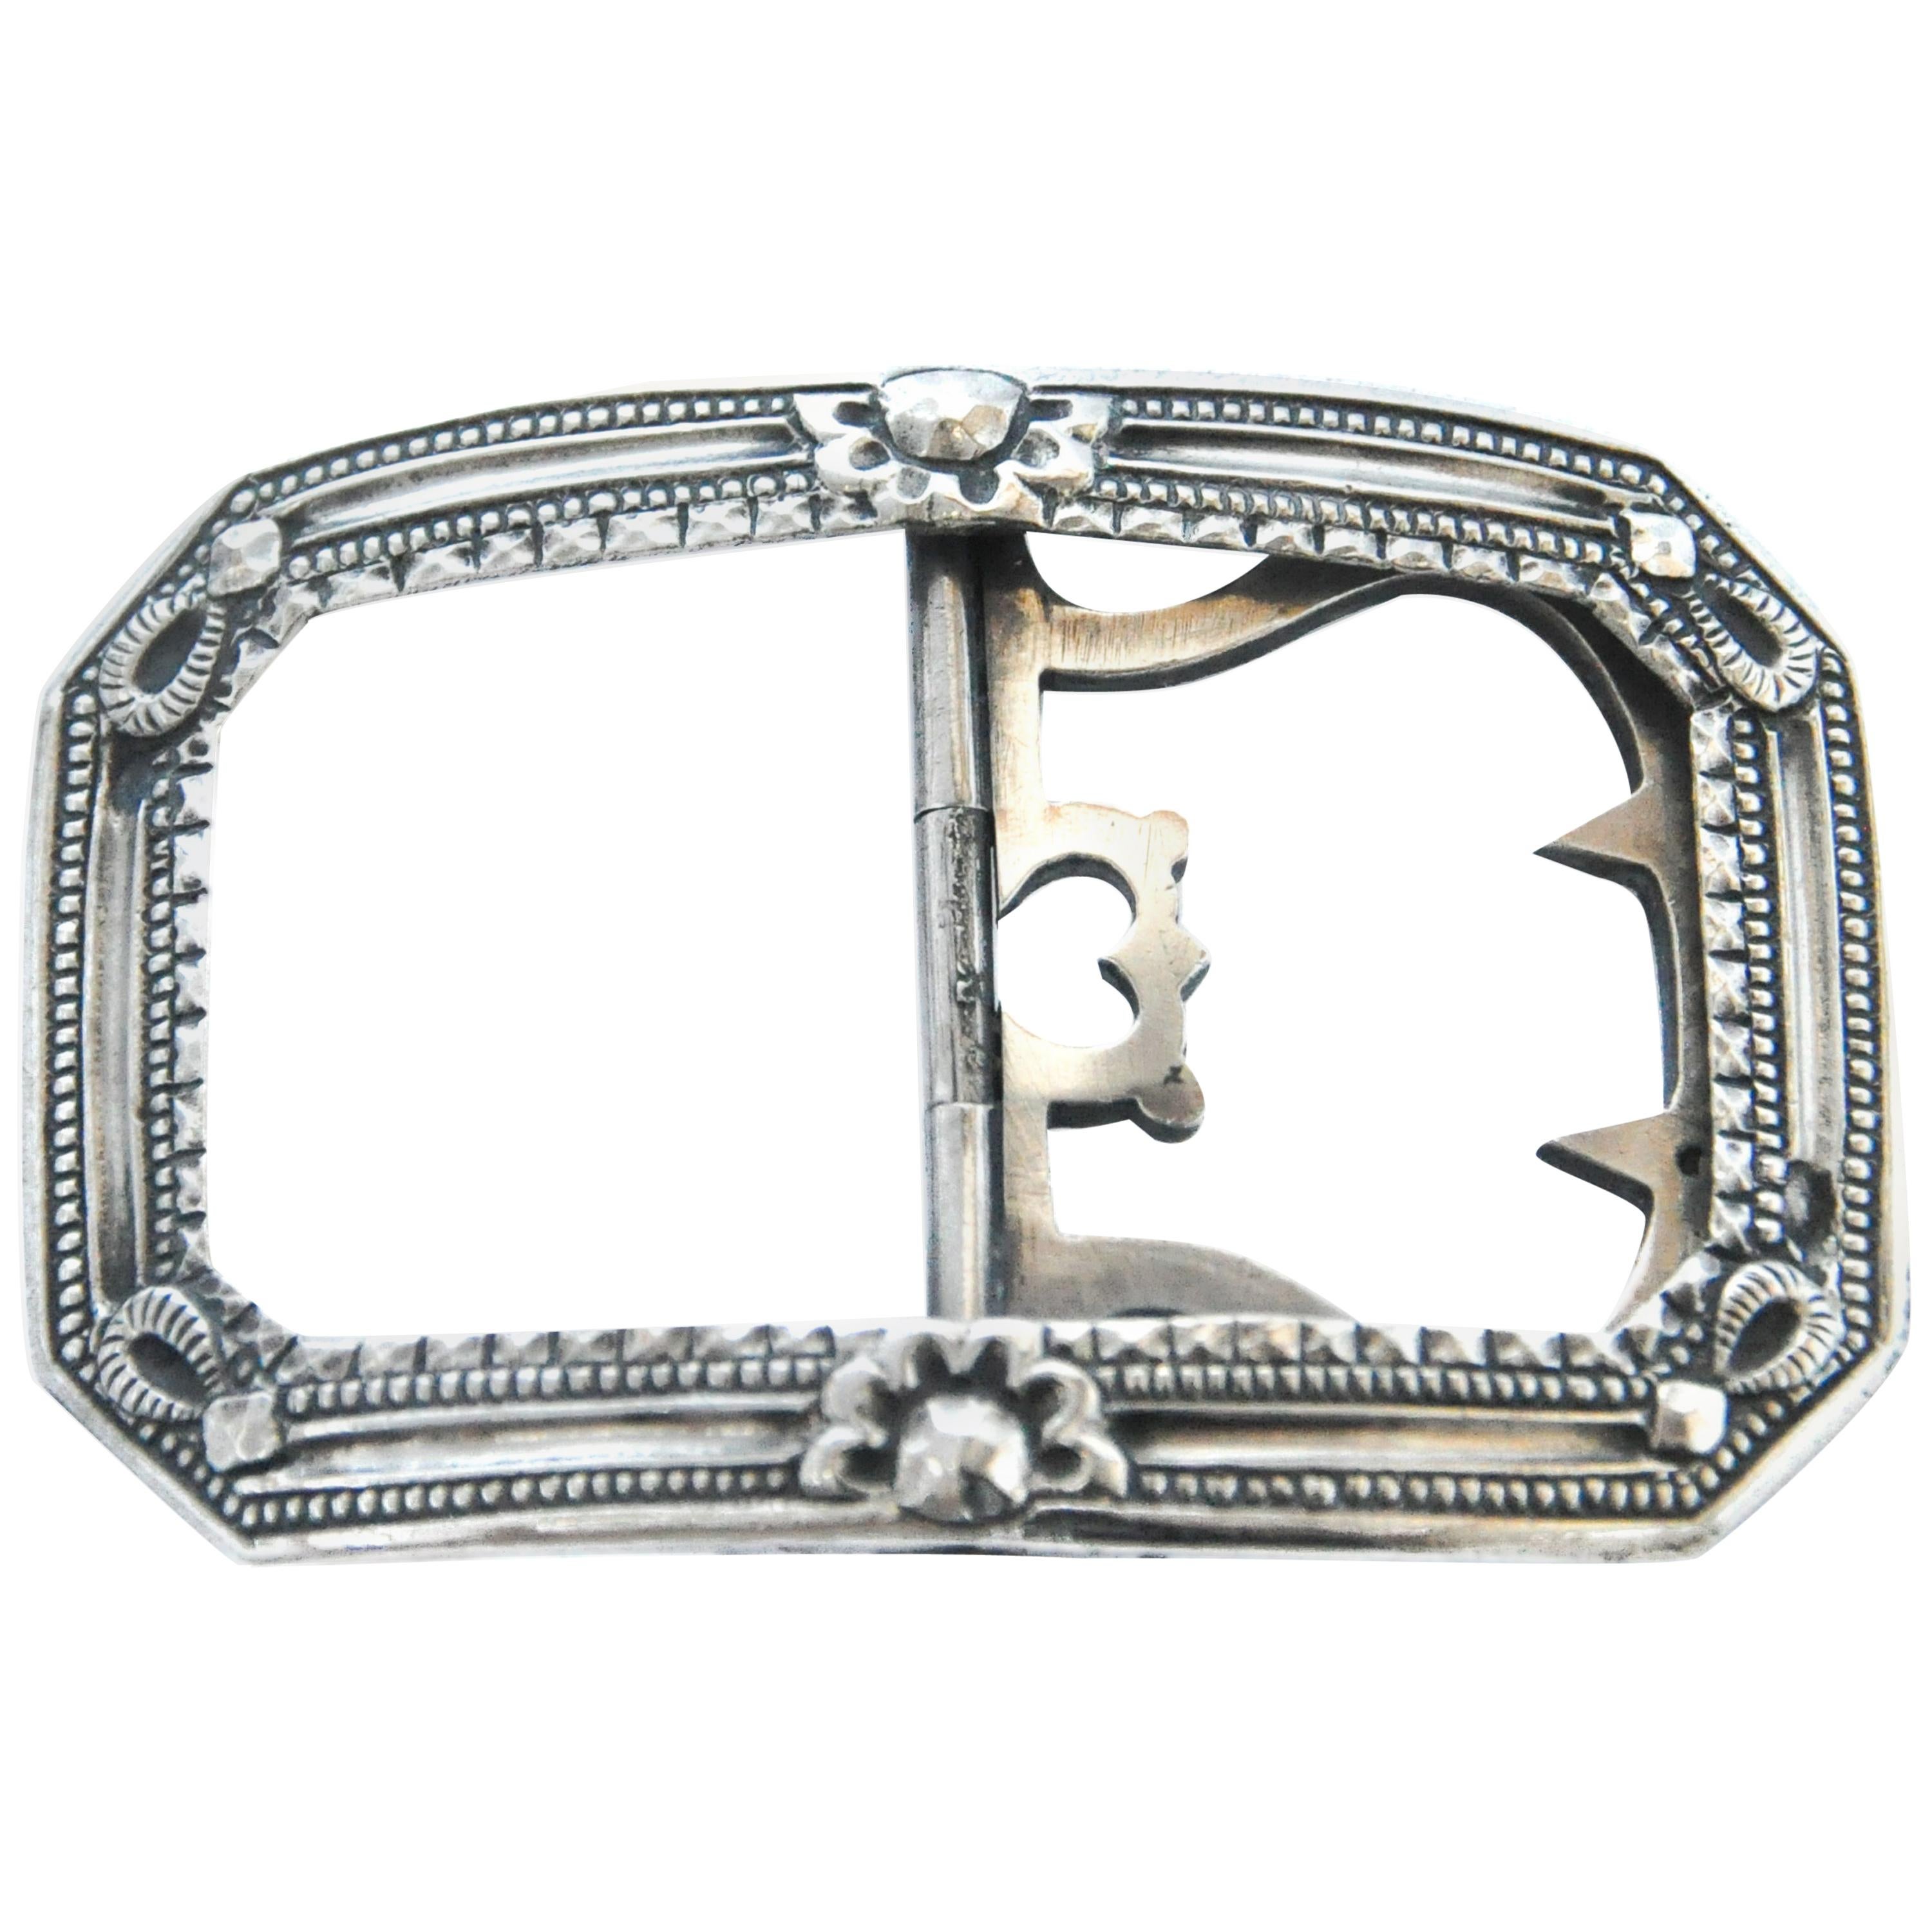 Pair Antique Paste Shoe Buckles.. 925 Sterling Silver.. Accessories Belts & Braces Belt Buckles Estate Piece 